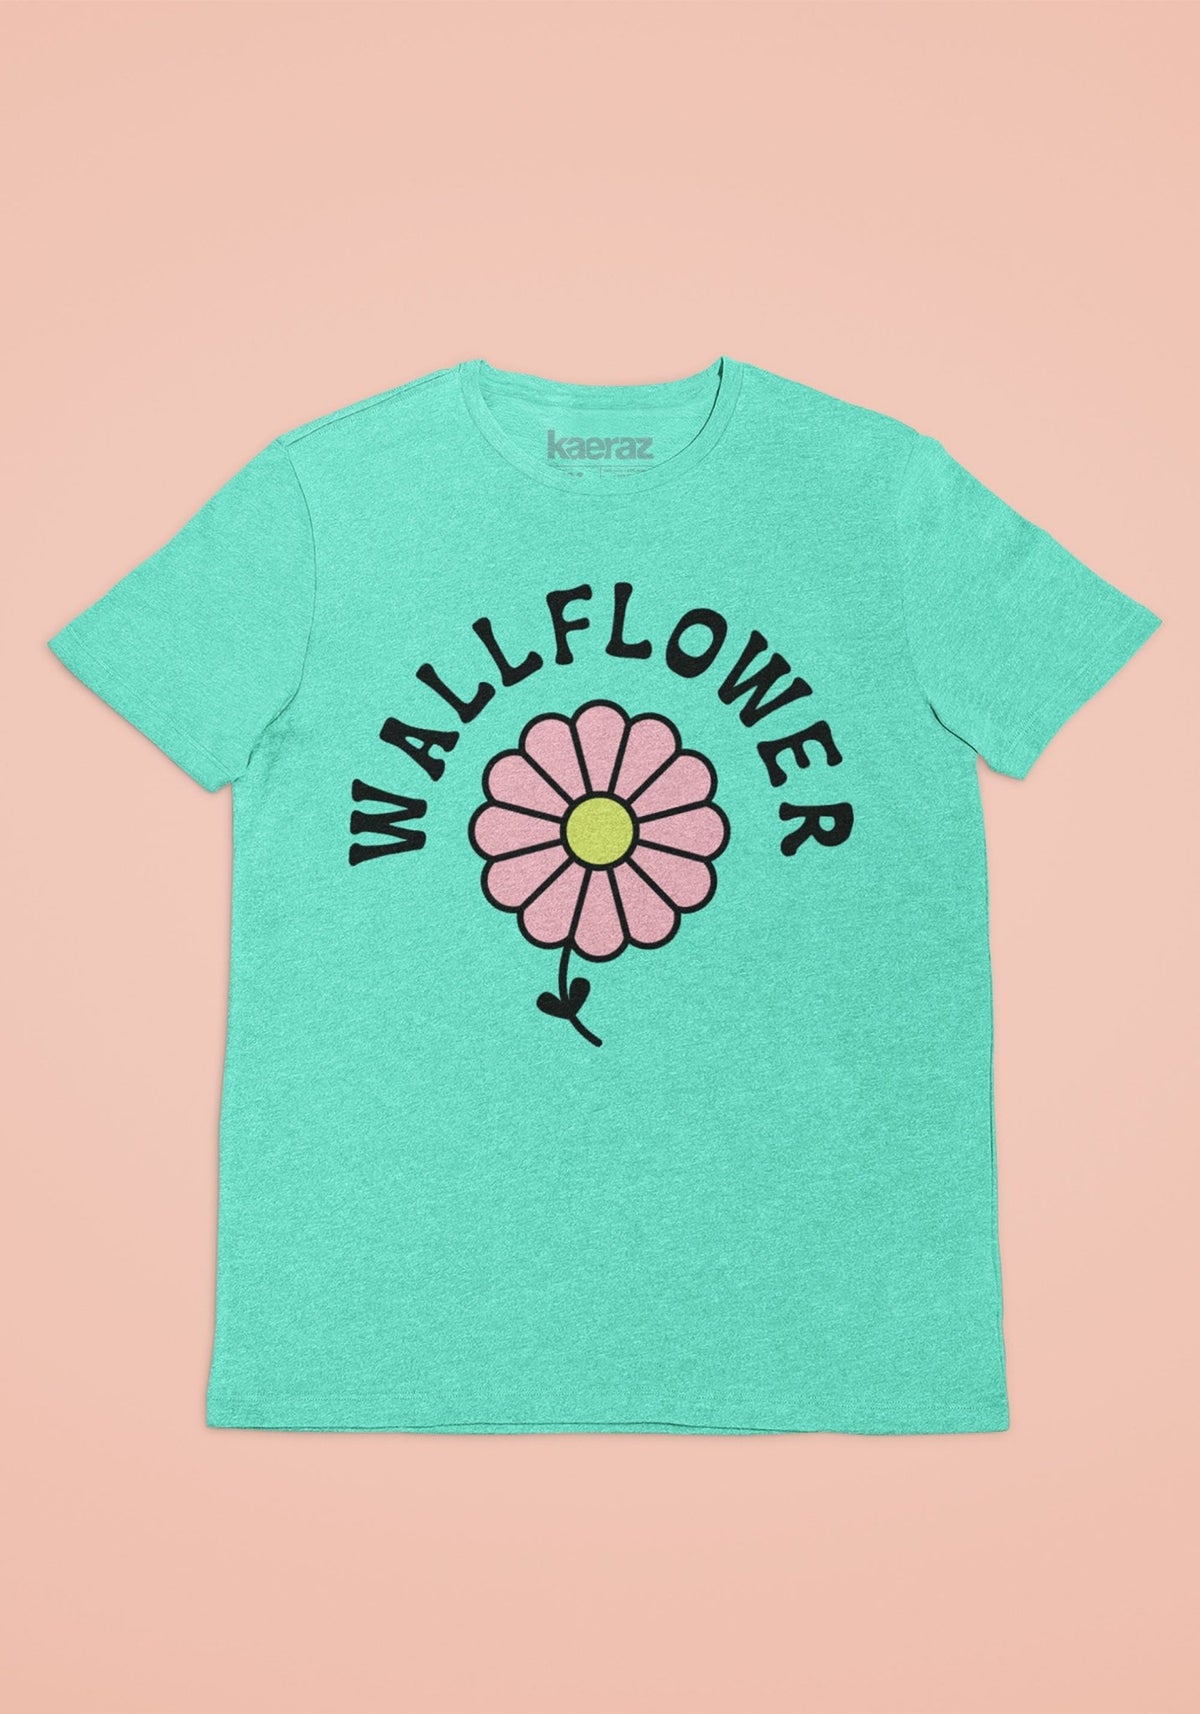 The Wallflower Tee by kaeraz 70s daisy floral